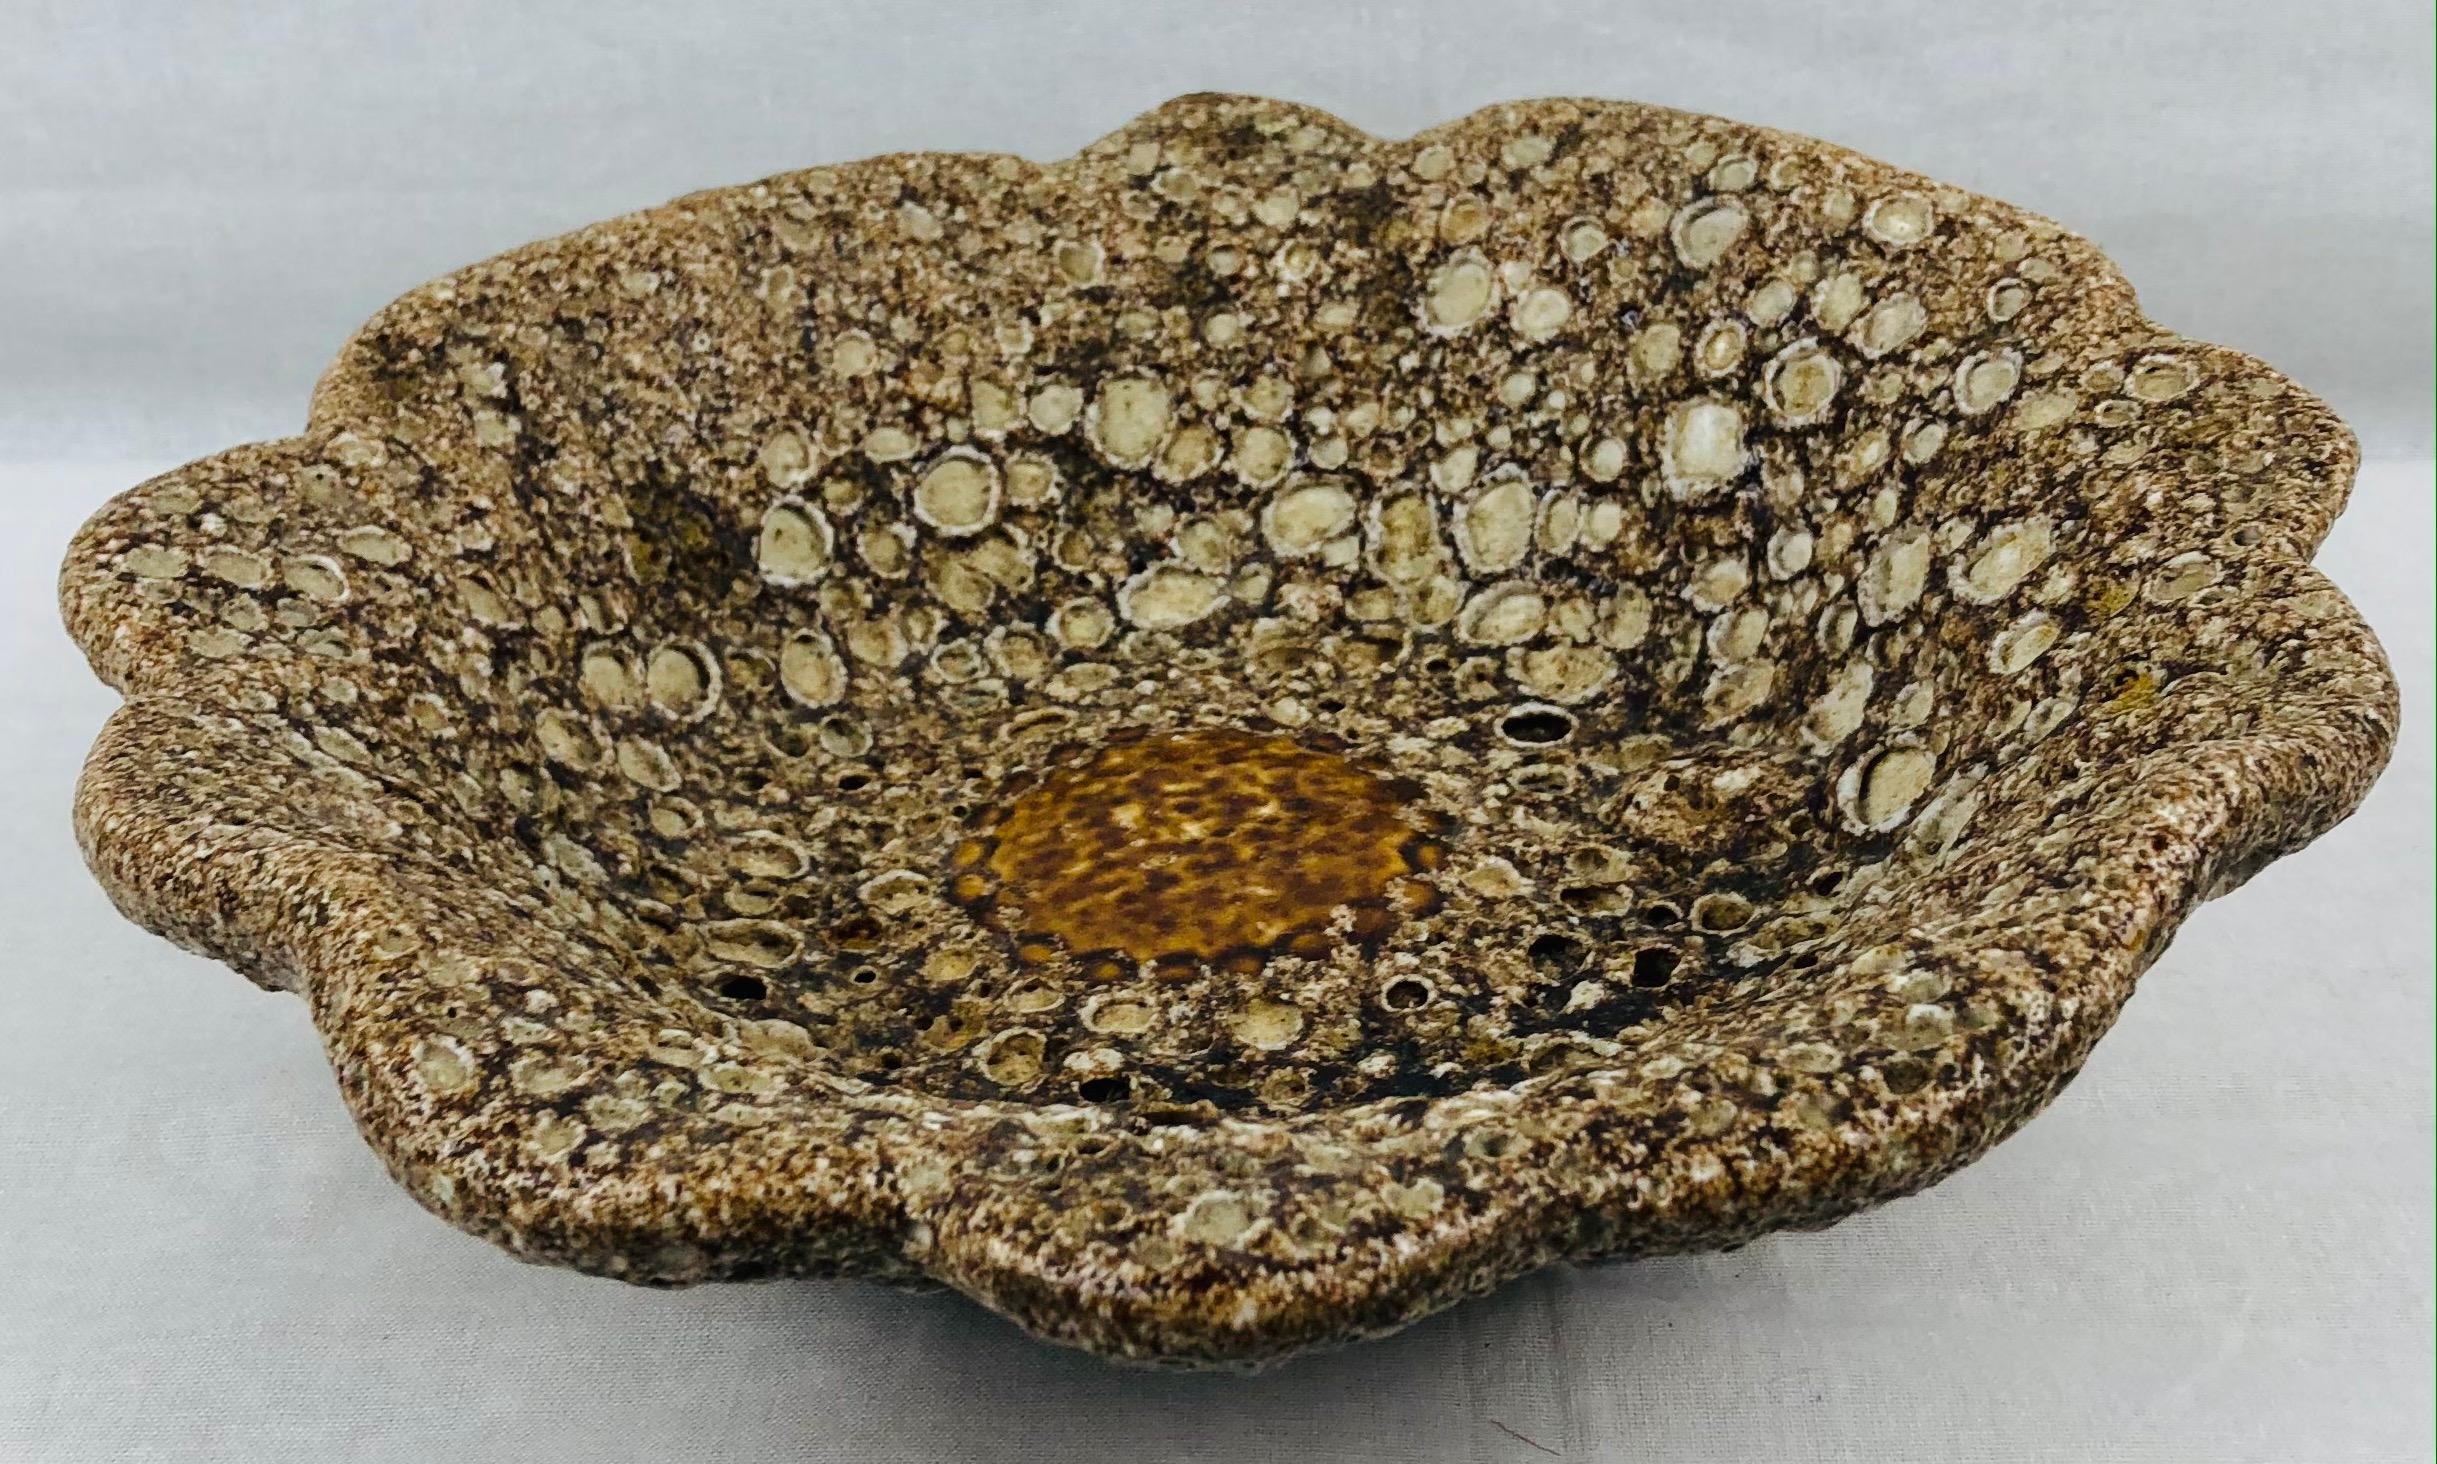 Un magnifique bol décoratif de Vallauris réalisé à la manière des céramiques de lave grasse de Charles Cart. 

Le processus de cuisson révèle les multiples couches sous l'émail multicolore d'une manière qui suggère la lave ou les glaciers. Il